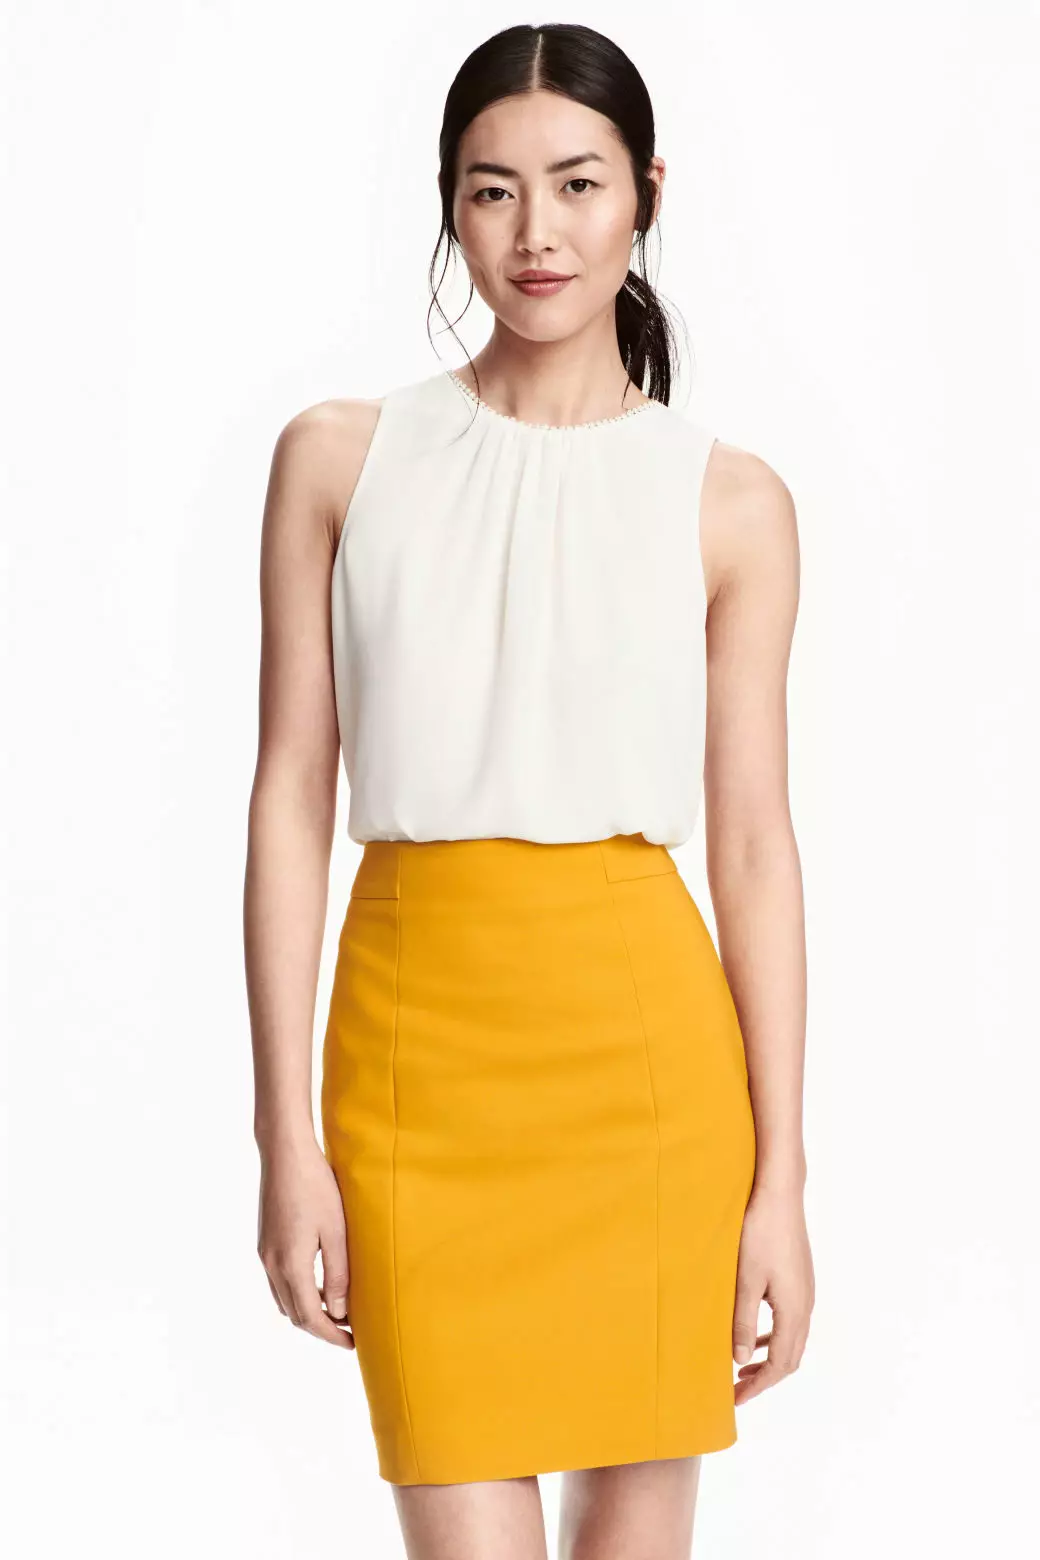 Skirts verdhë (102 foto): Çfarë është e veshur, laps dhe diell, të gjatë në dysheme dhe të shkurtër, me të zezë, blu, jeshile dhe të bardhë 14623_47